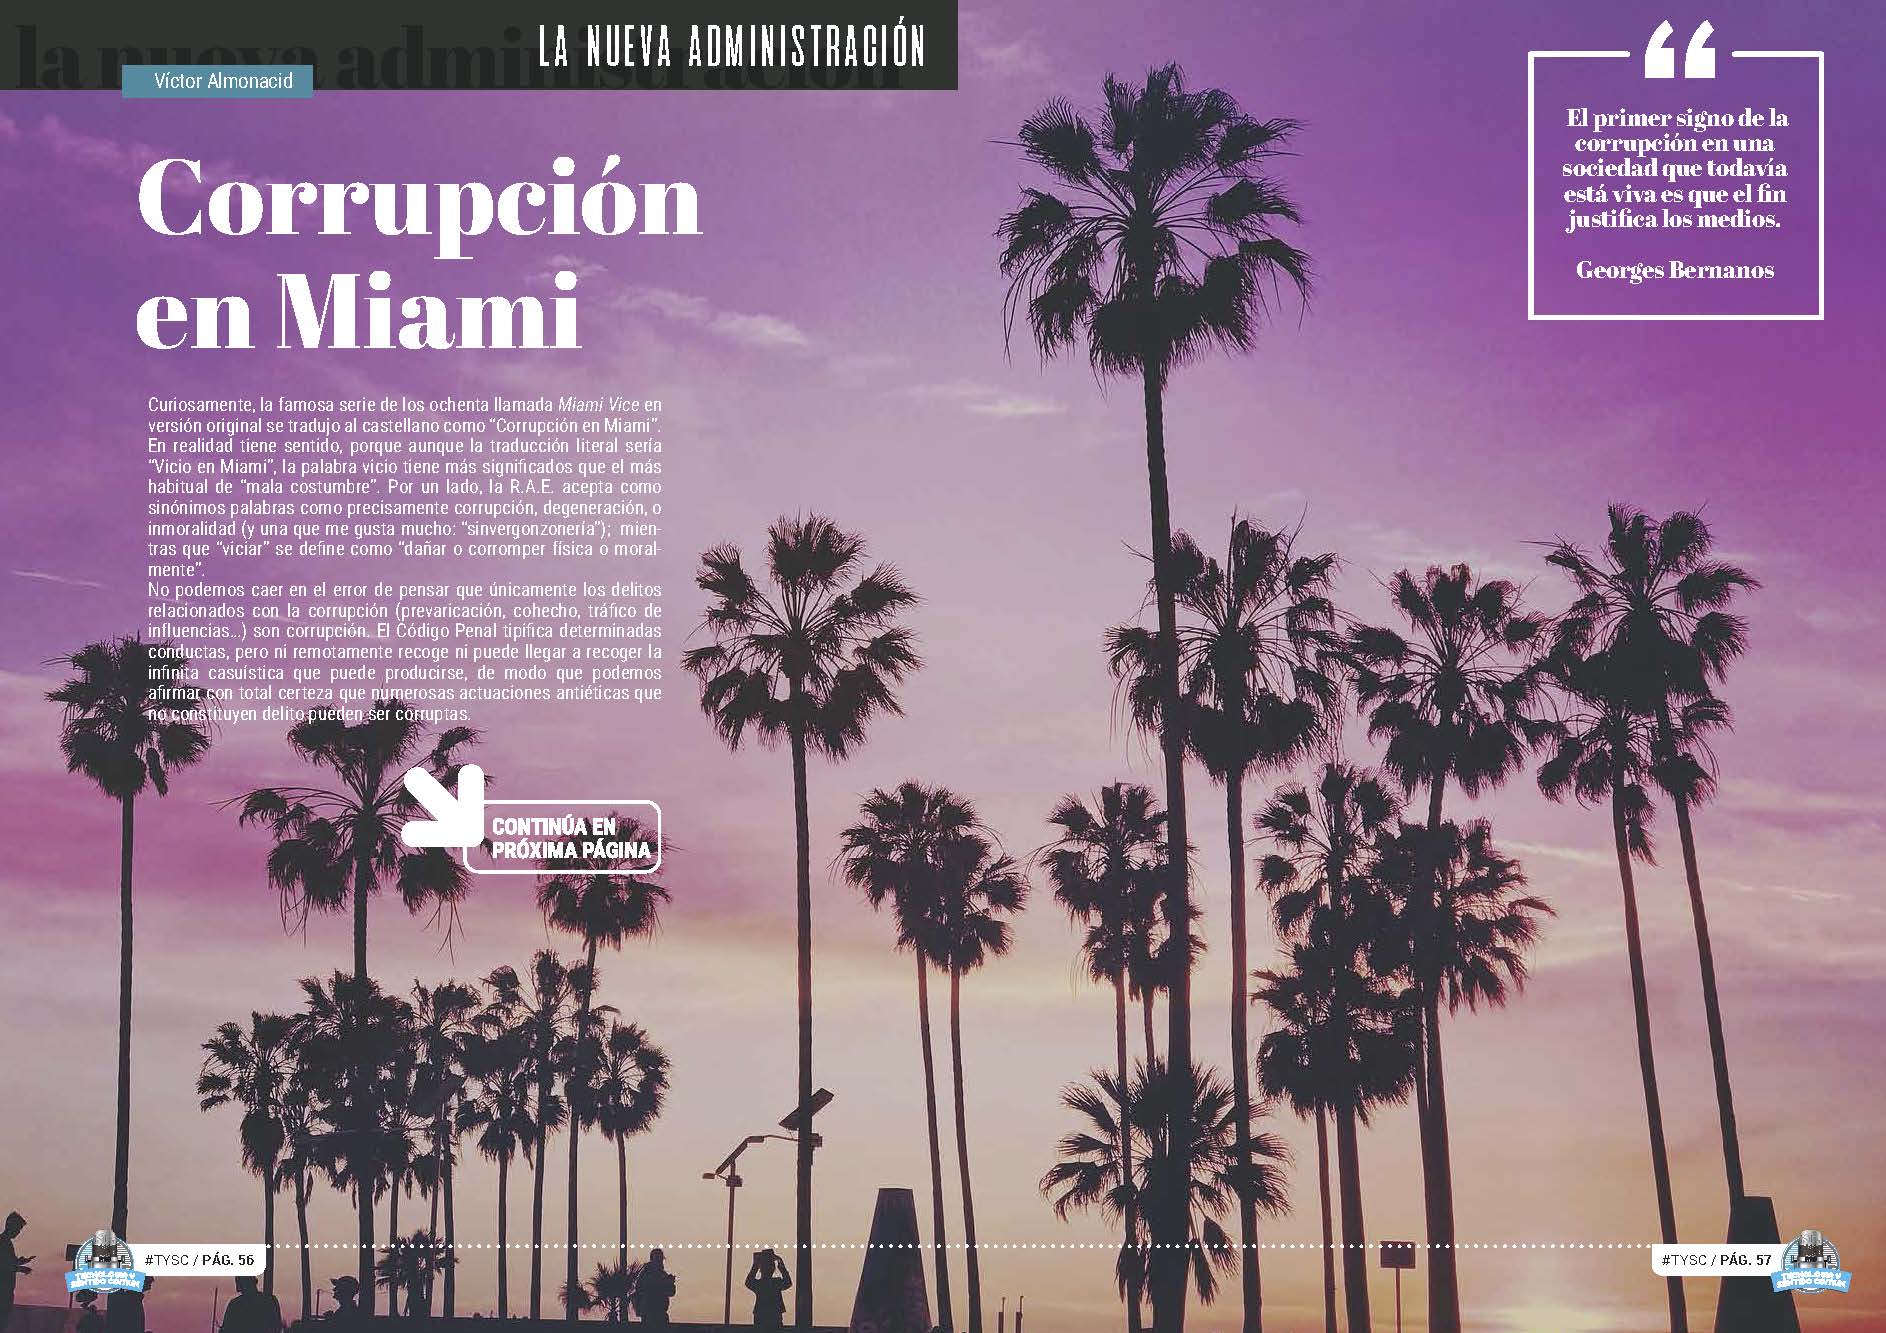 Artículo "Corrupción en Miami" de Victor Almonacid en la Sección "La Nueva Administración" de la Revista Tecnología y Sentido Común #TYSC